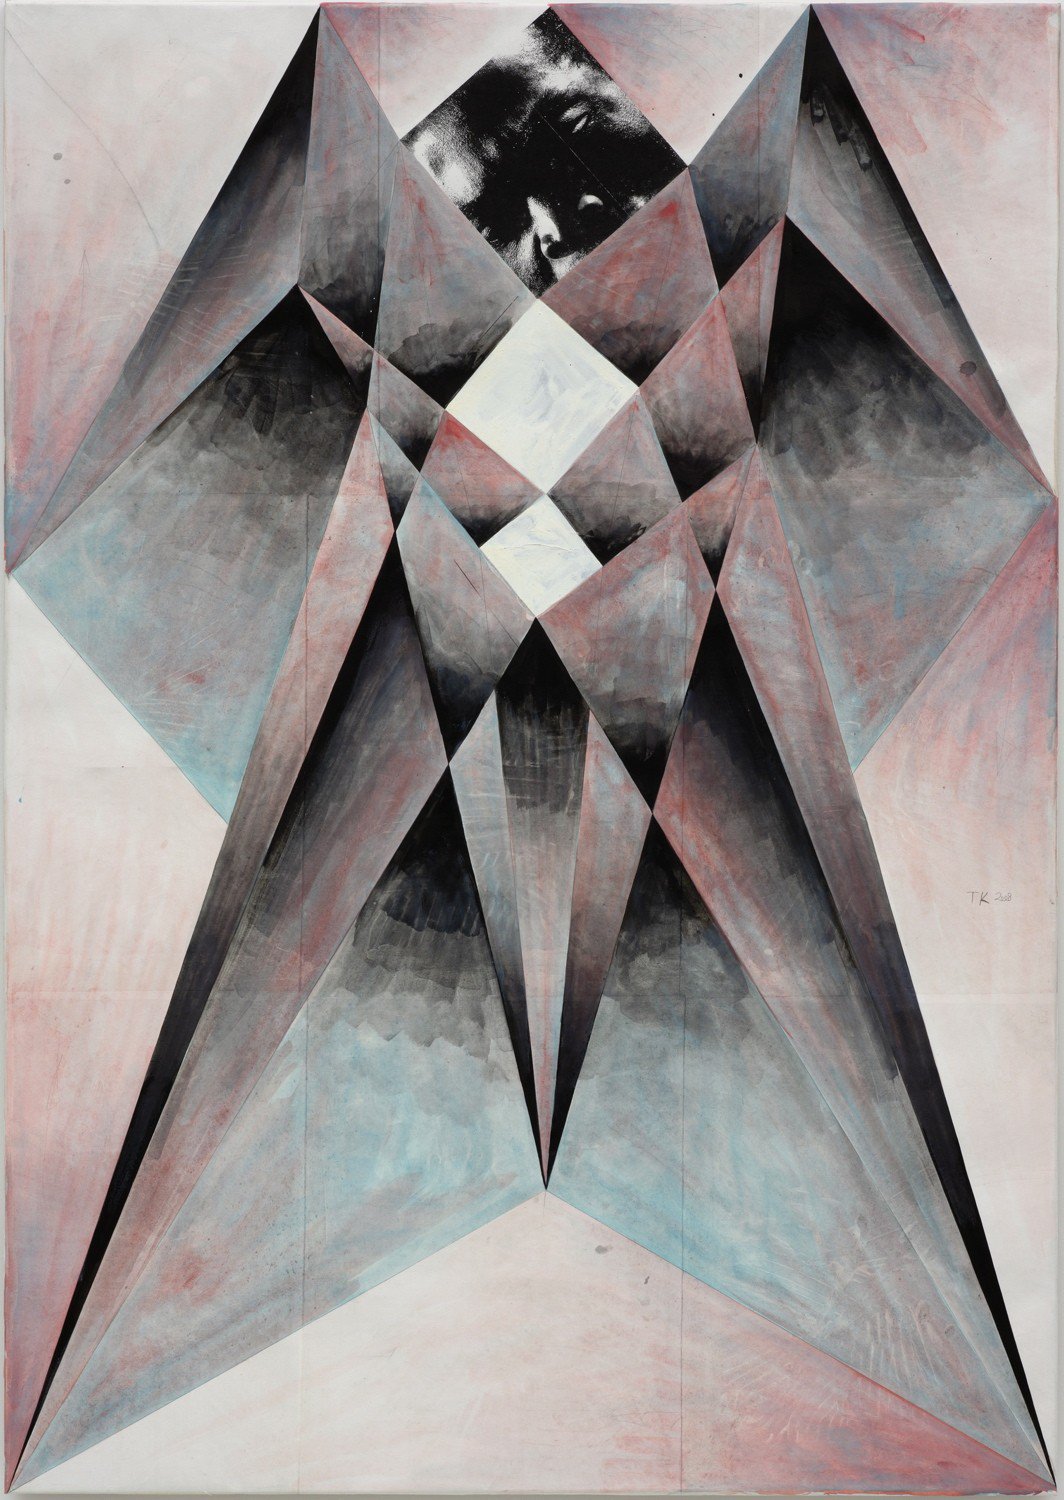 Tillman KaiserBoss Man, 2009Tempera, silkscreen on canvas190 x 135 cm